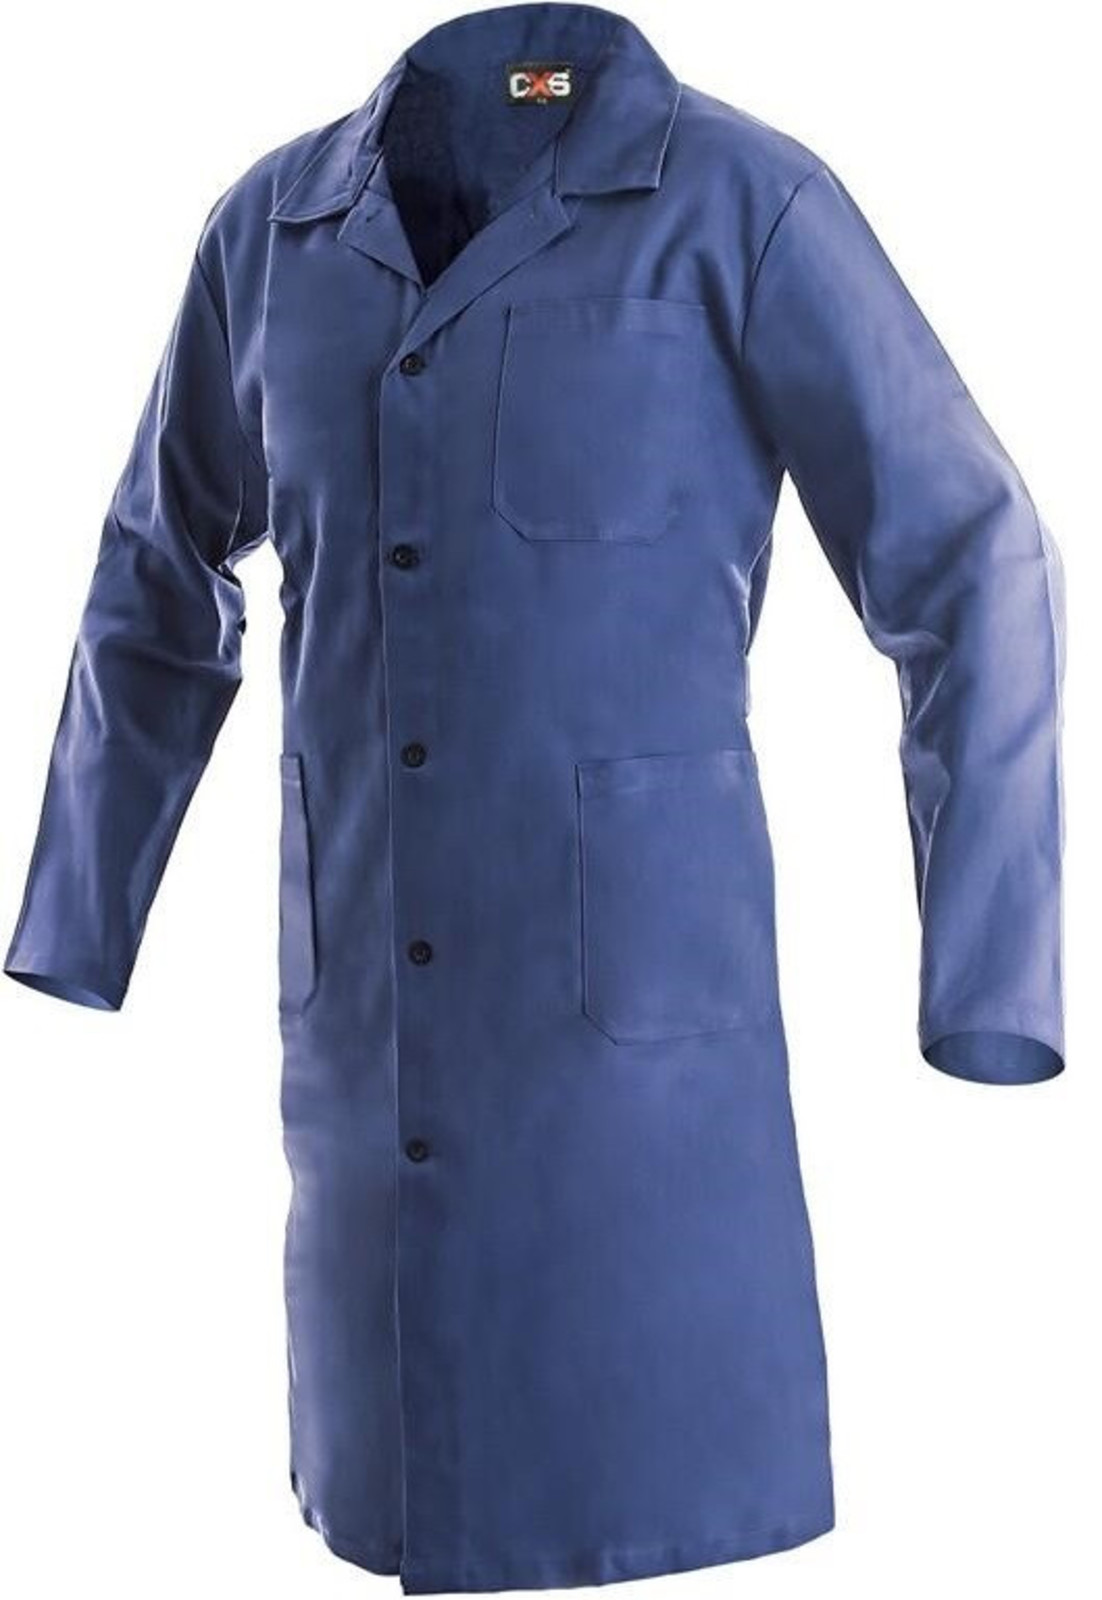 Pánsky pracovný plášť CXS Klasik Venca - veľkosť: 58, farba: modrá